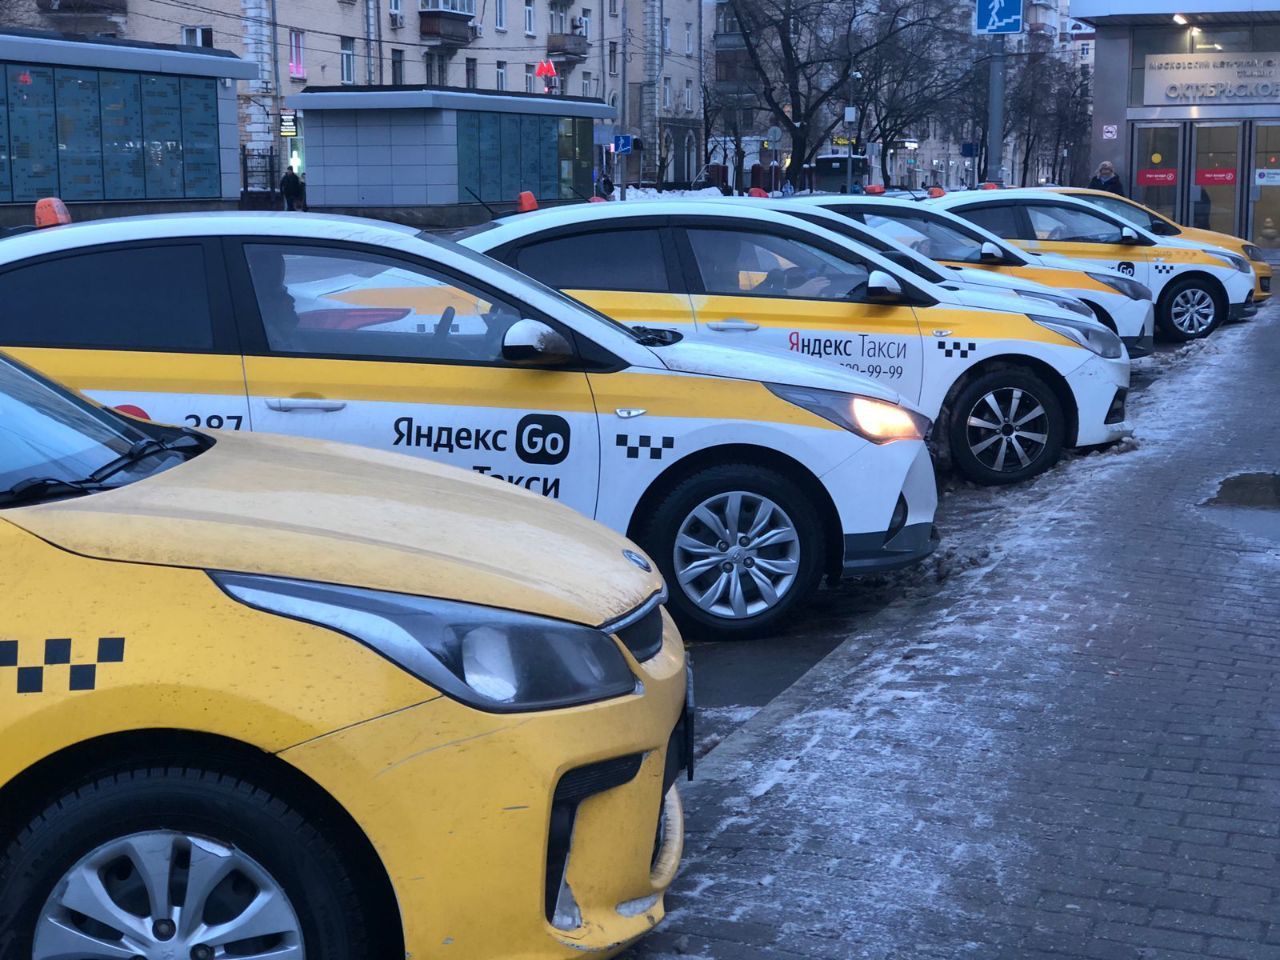 СМИ: В Екатеринбурге таксист избил пассажира под крики «русня поганая»